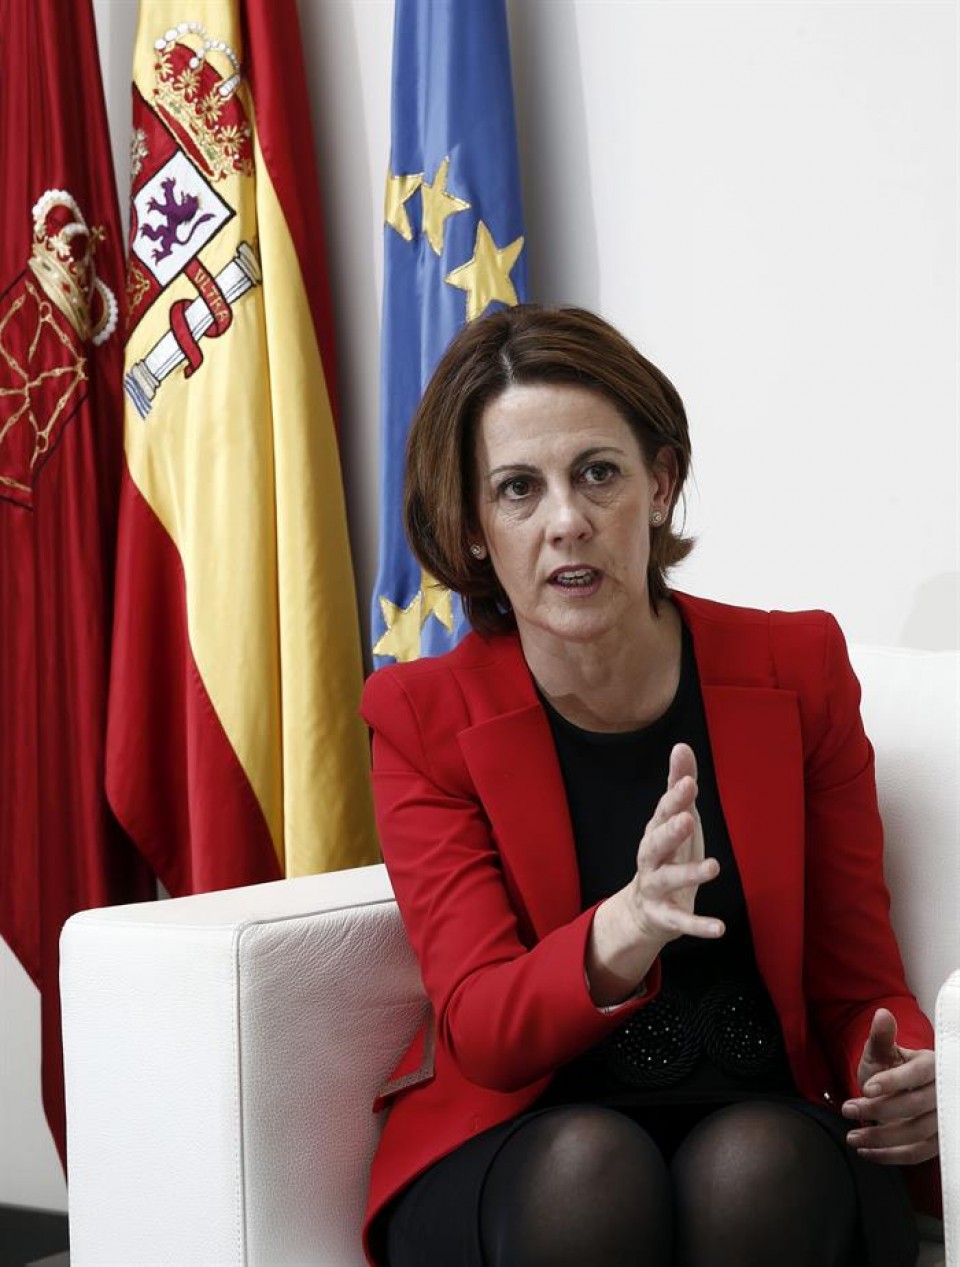 La presidenta del Gobierno de Navarra, Yolanda Barcina.